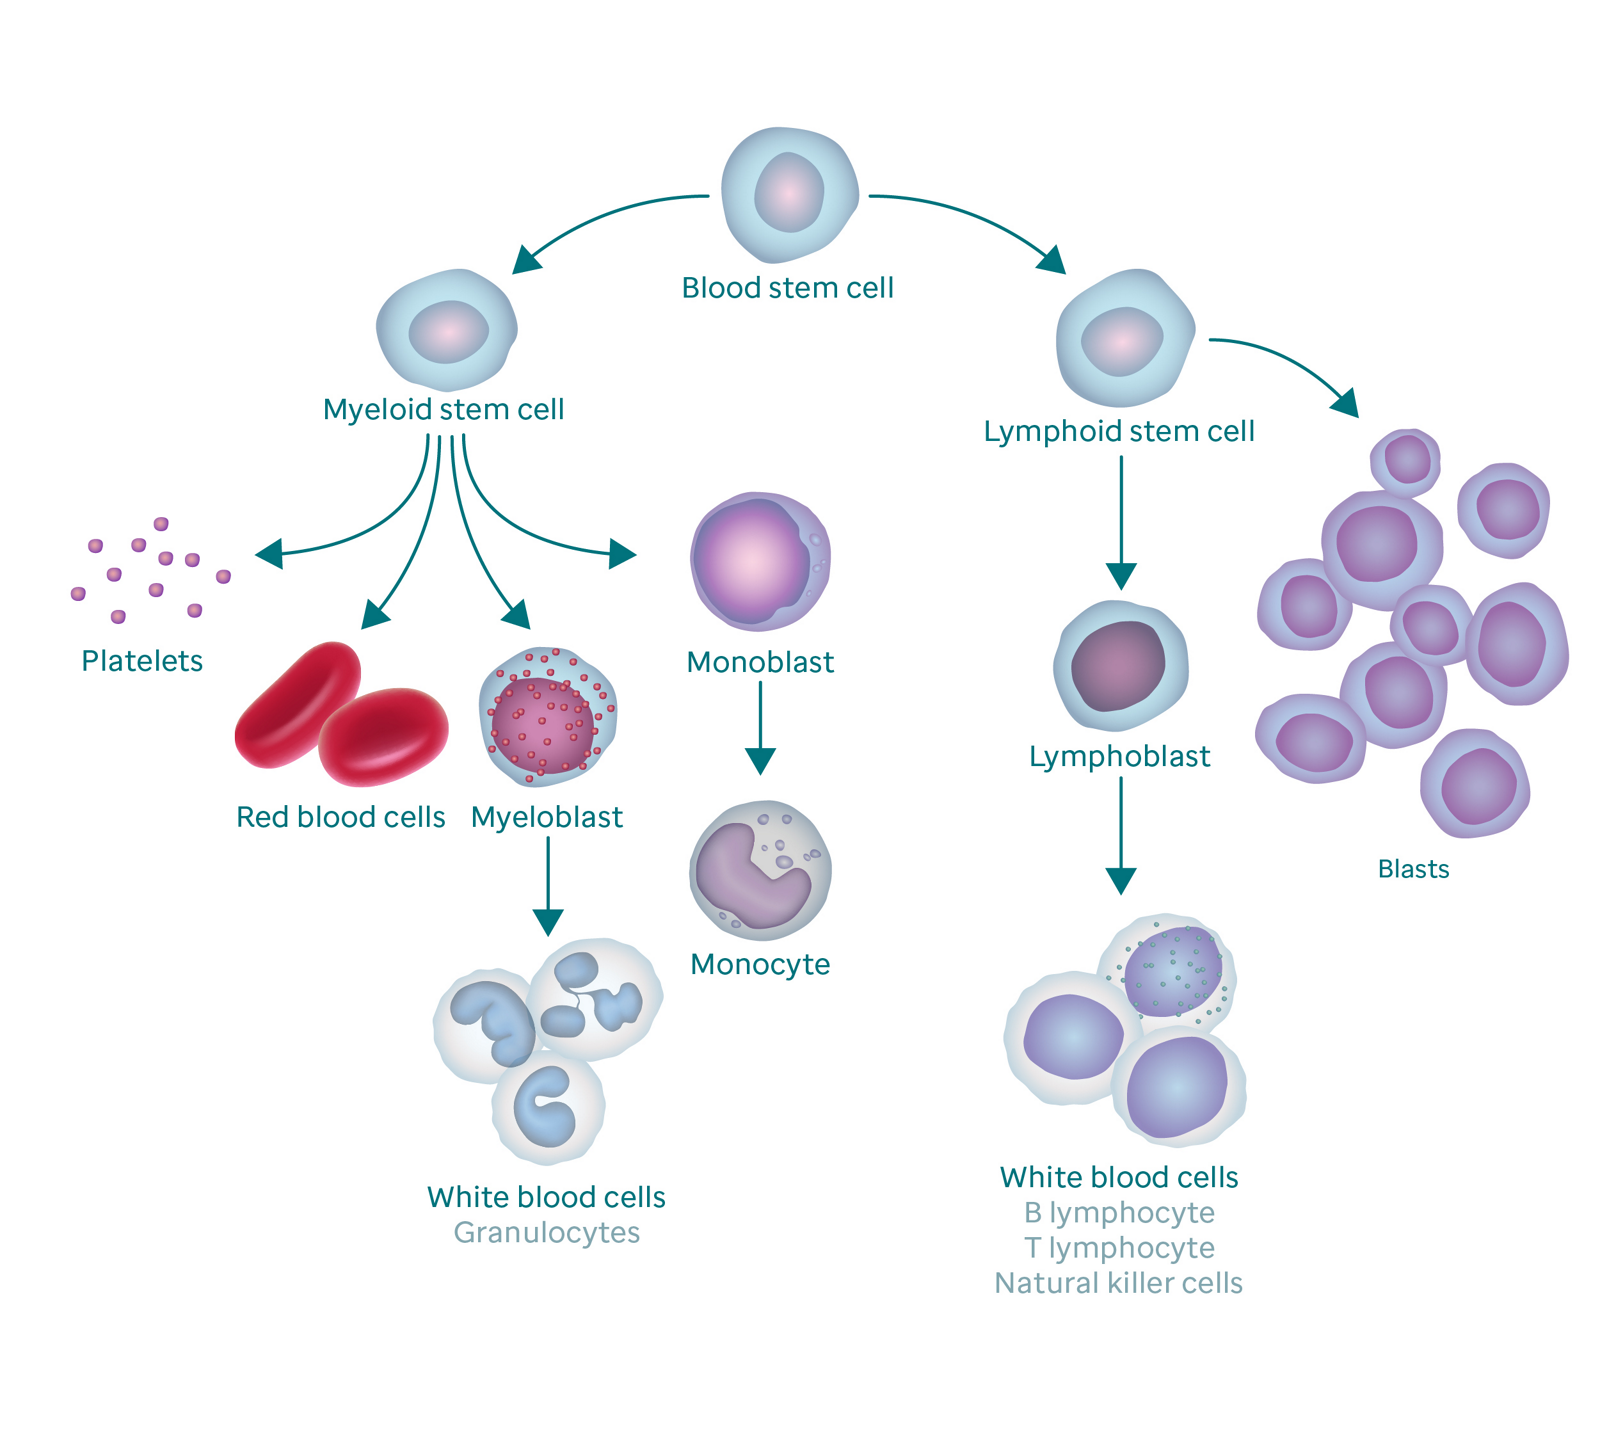 Grafikk som viser bloddannelsesprosessen og hvordan den resulterer i blastceller.  Grafikken begynner med en blodstamcelle.  Til venstre forgrener den seg til myeloide stamceller, som forgrener seg til blodplater, røde blodceller, myeloblast og monoblast.  Myeloblasten endres til hvite blodceller (også kalt granulocytter) og monoblasten endres til en monocytt.  Den høyre grenen av blodstamcellen går til lymfoid stamcelle, som forgrener seg til lymfoblaster (som endres til hvite blodceller) og blastceller.